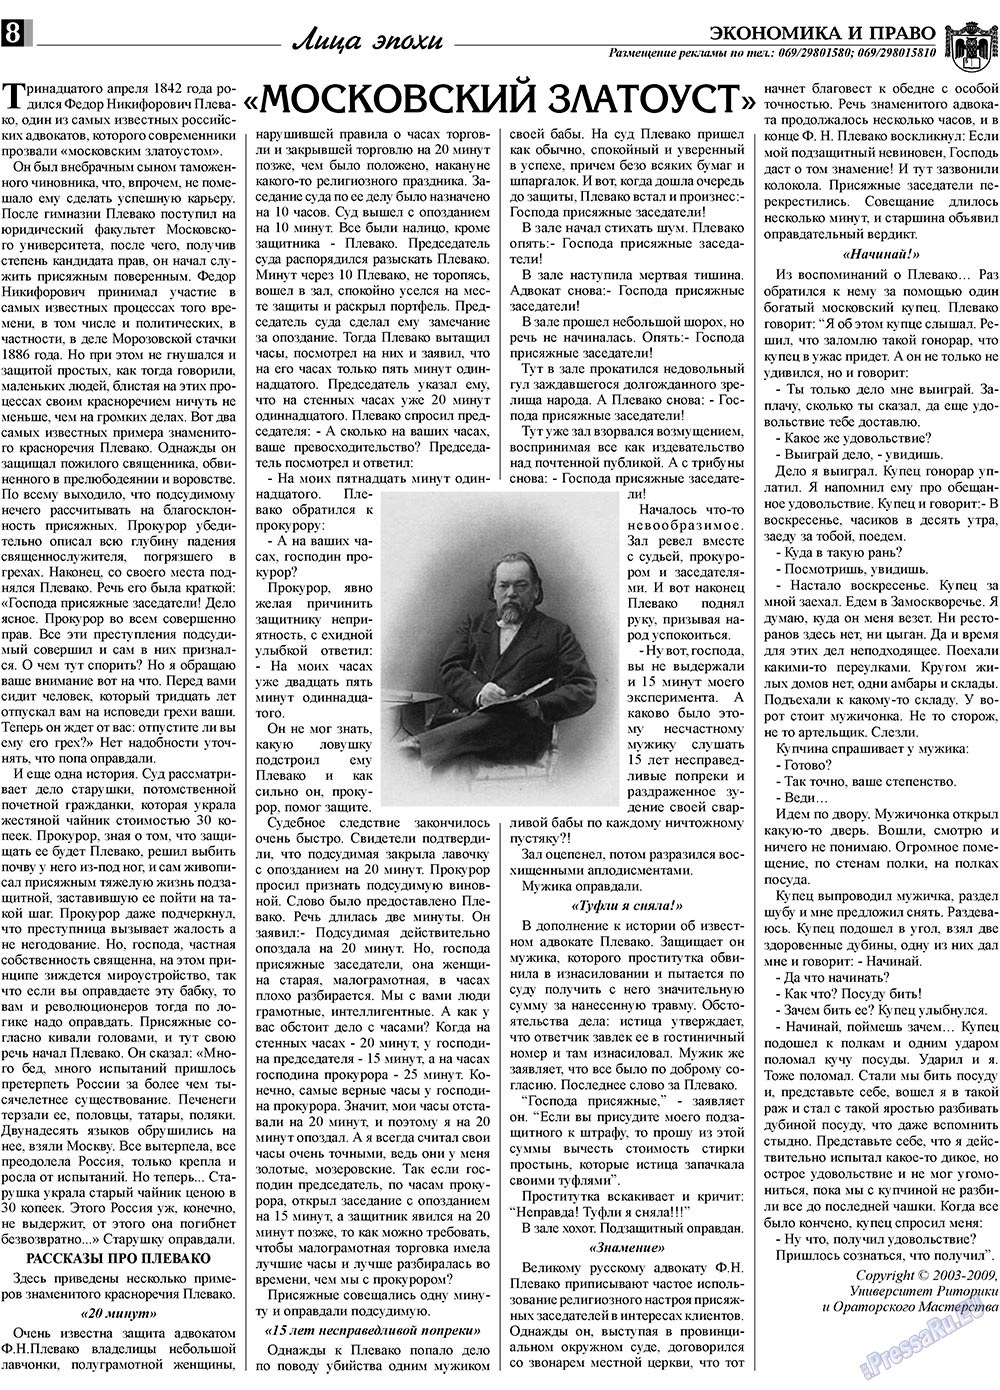 Экономика и право, газета. 2009 №11 стр.8